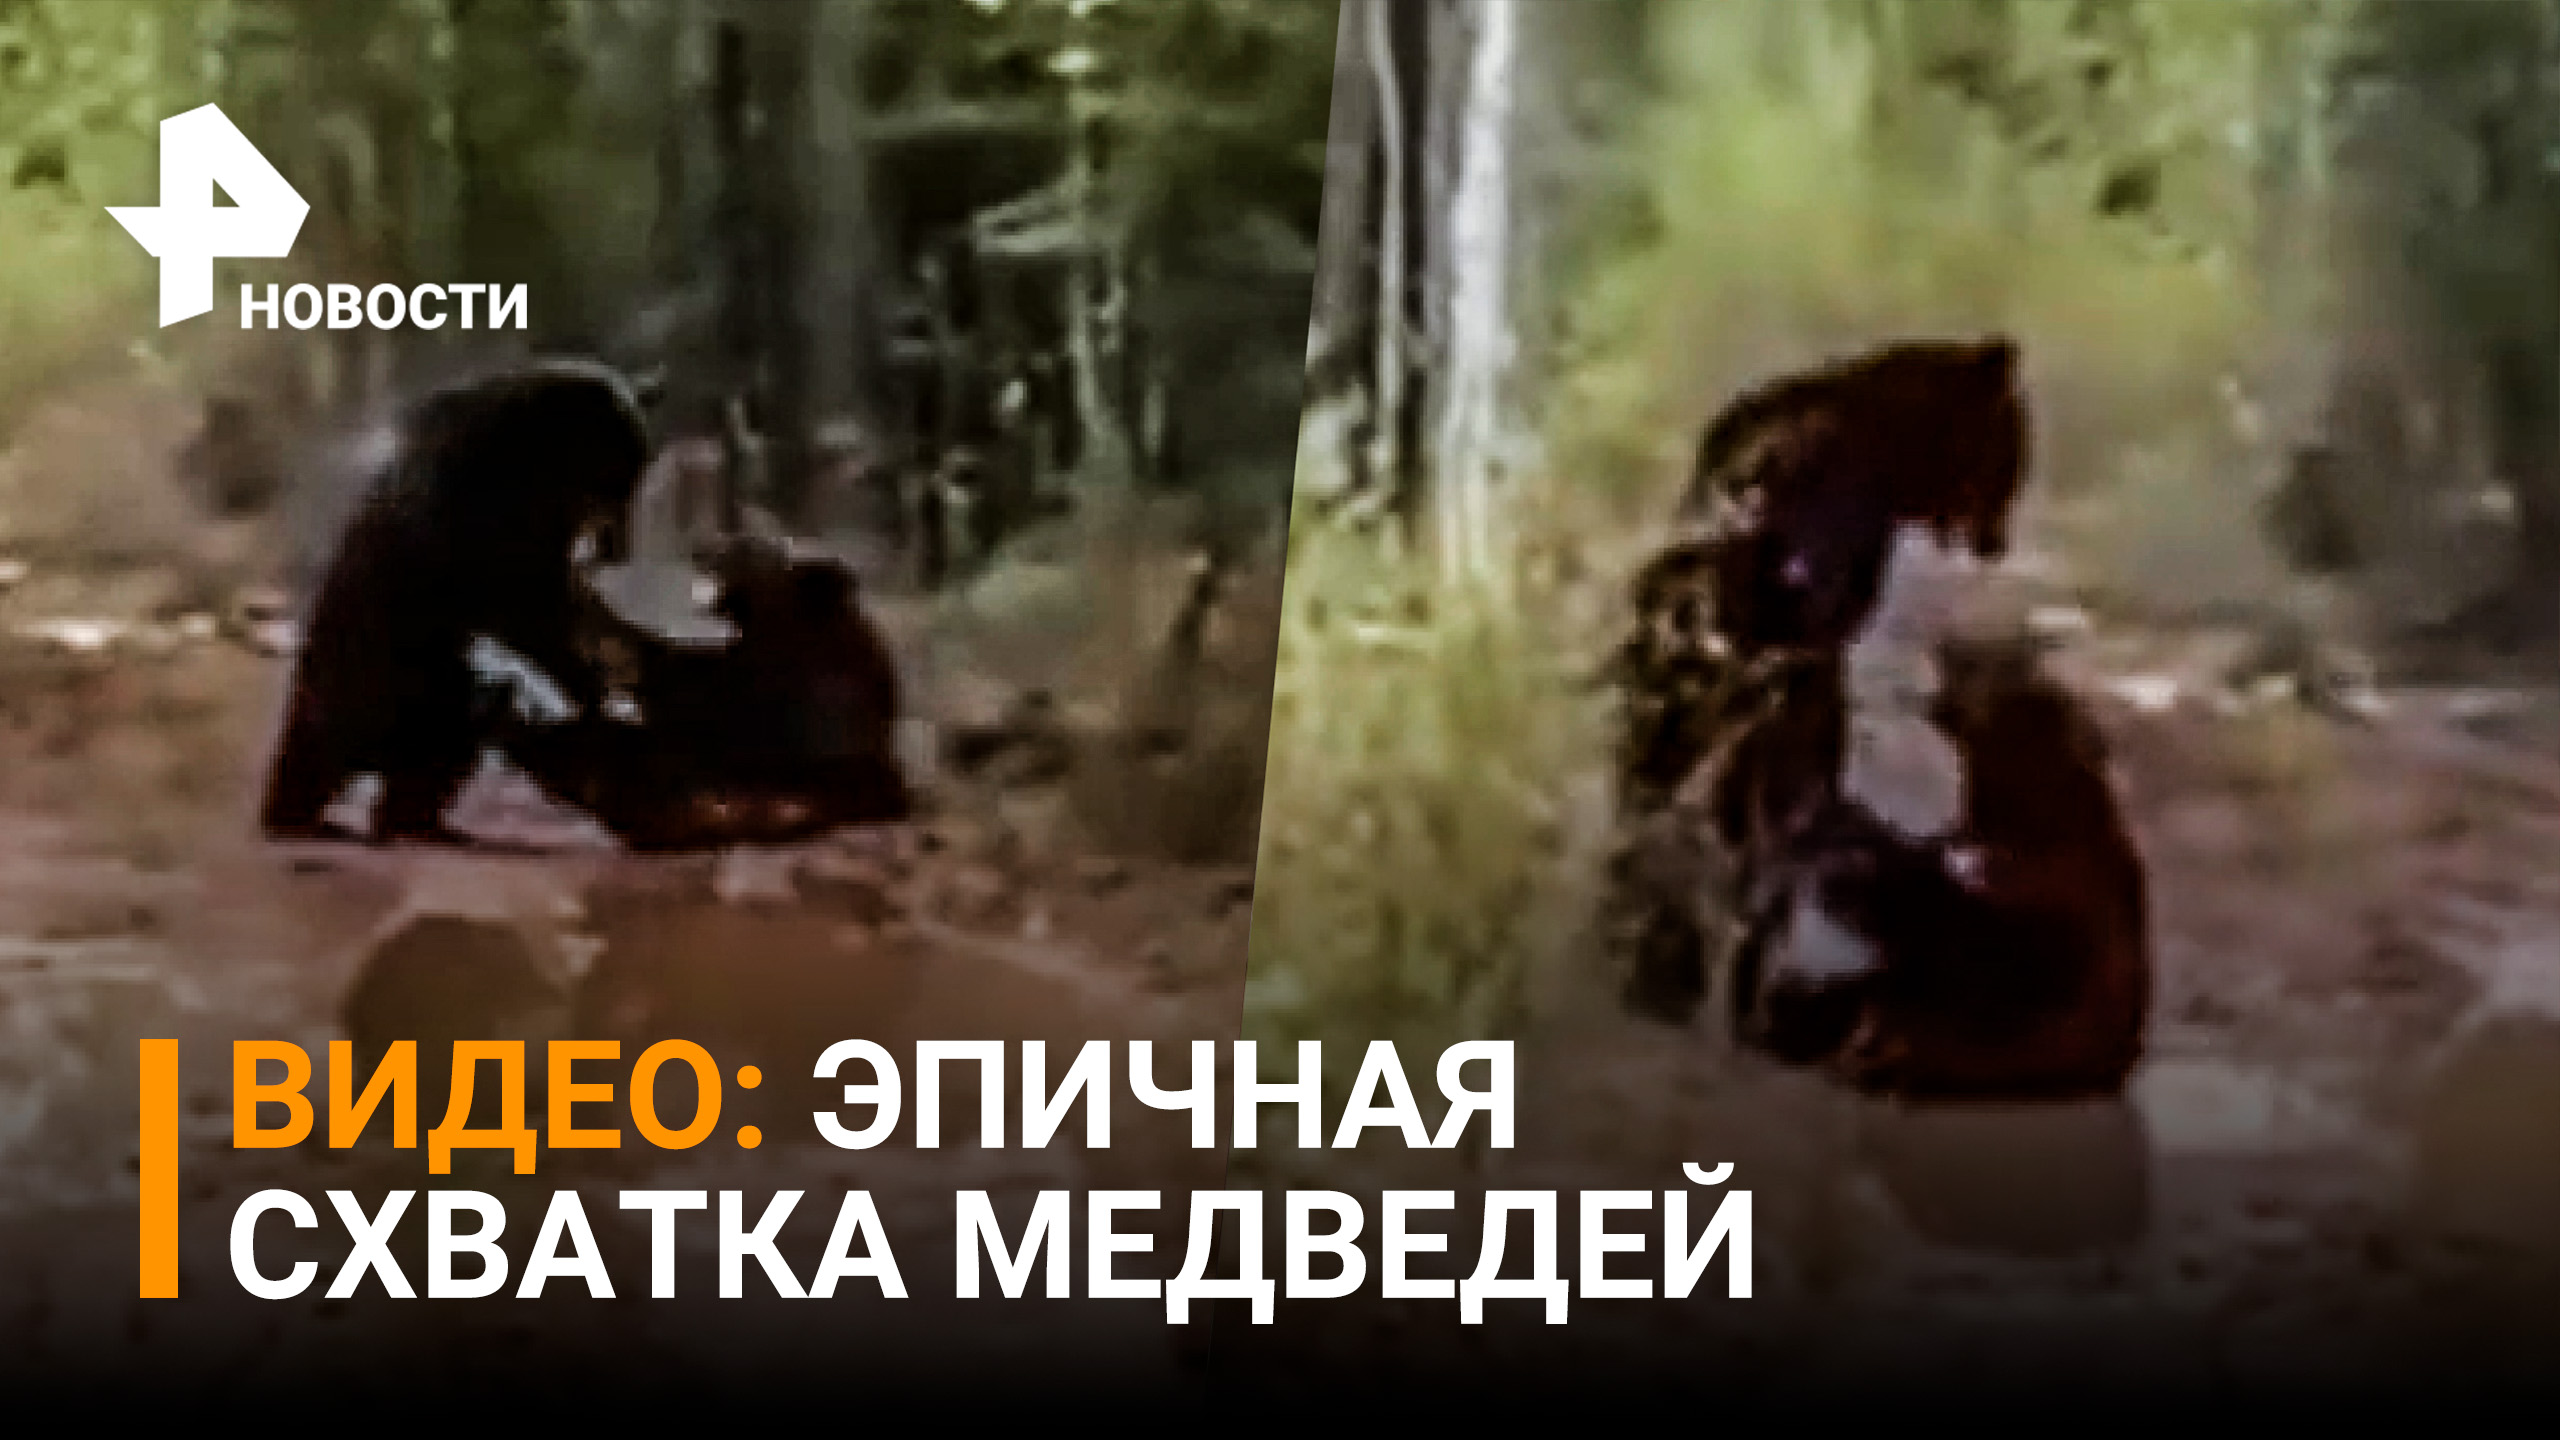 Эпичная схватка сахалинских медведей за территорию попала на видео / РЕН Новости